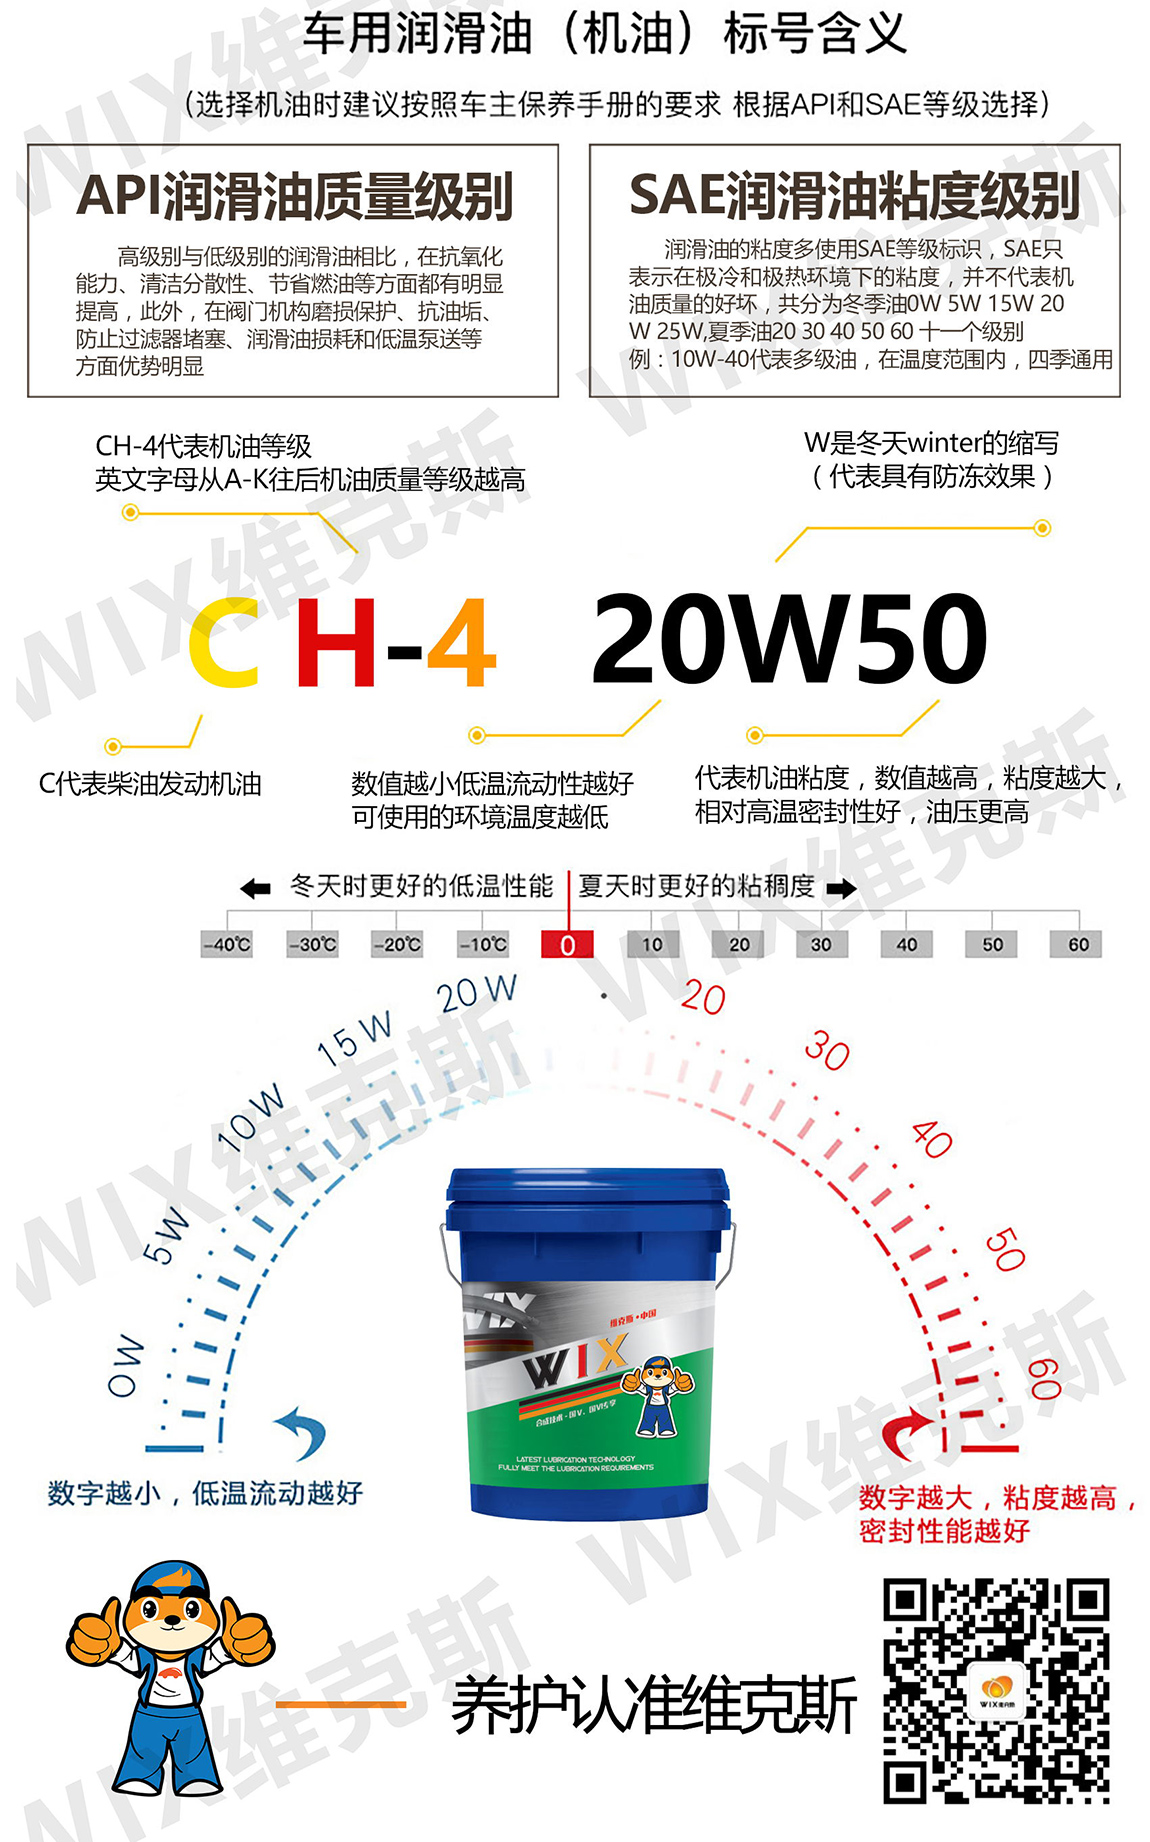 CH-4-20W50-新_看图王_03.jpg